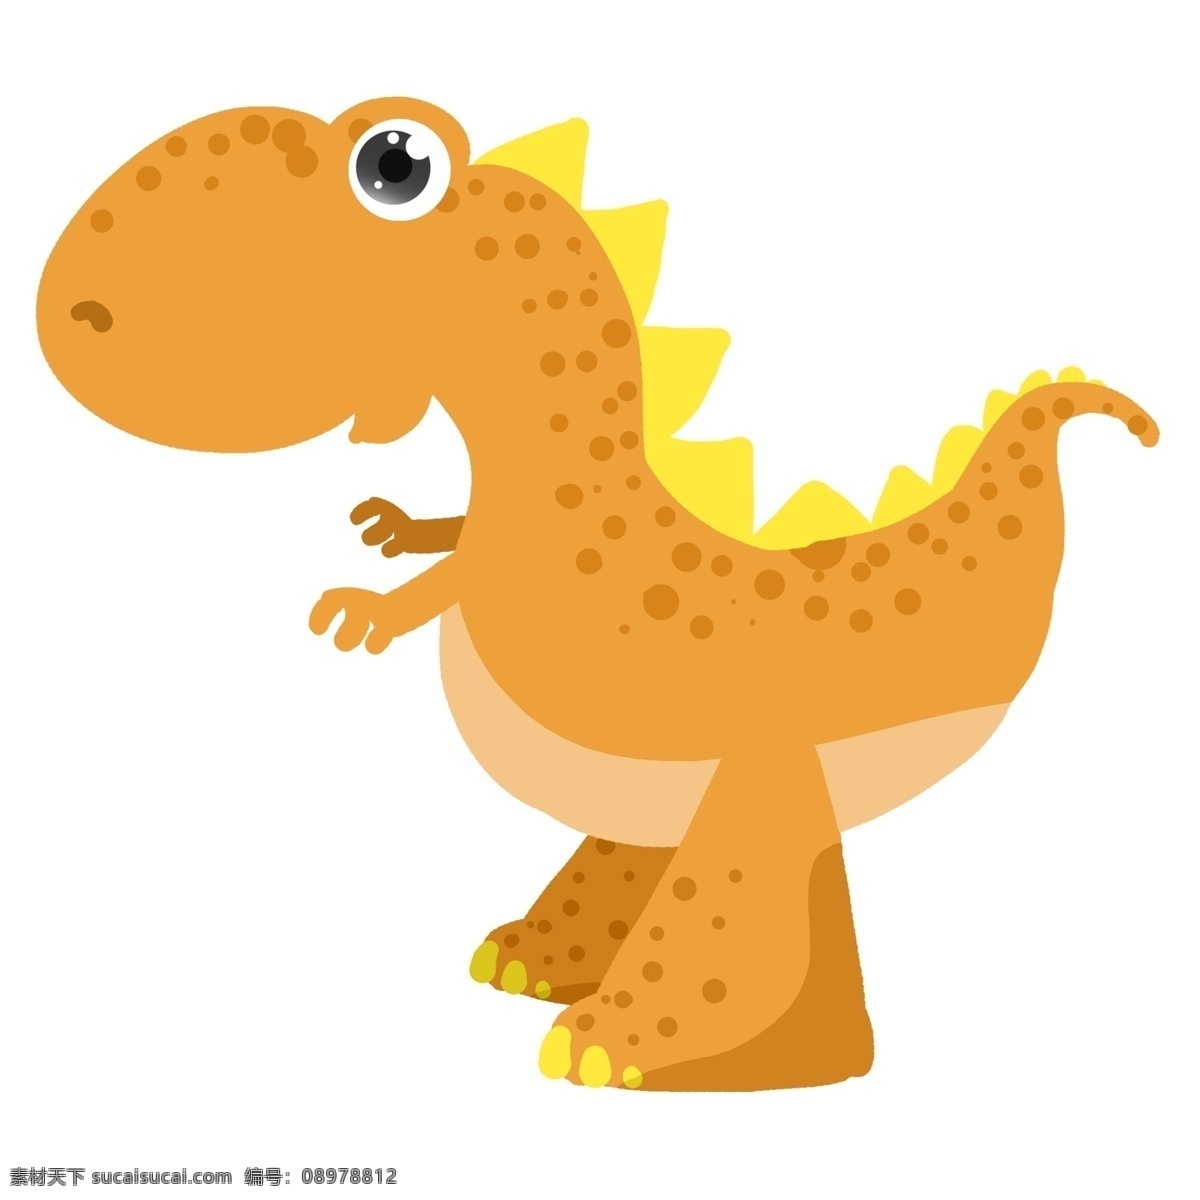 动物 玩具 恐龙 插画 橘色可爱恐龙 卡通大恐龙 可爱动物恐龙 动物大恐龙 可爱玩具恐龙 动物恐龙